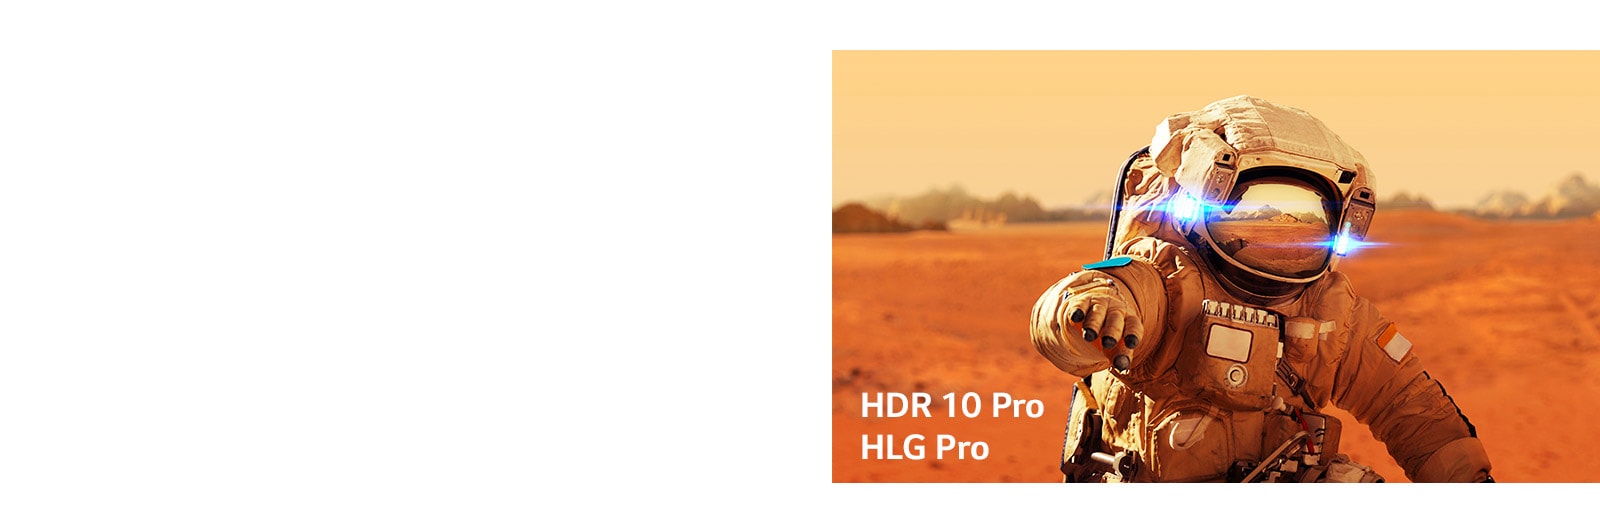 Marvel Iron Man, carte del titolo con loghi HLG Pro e HDR 10 Pro